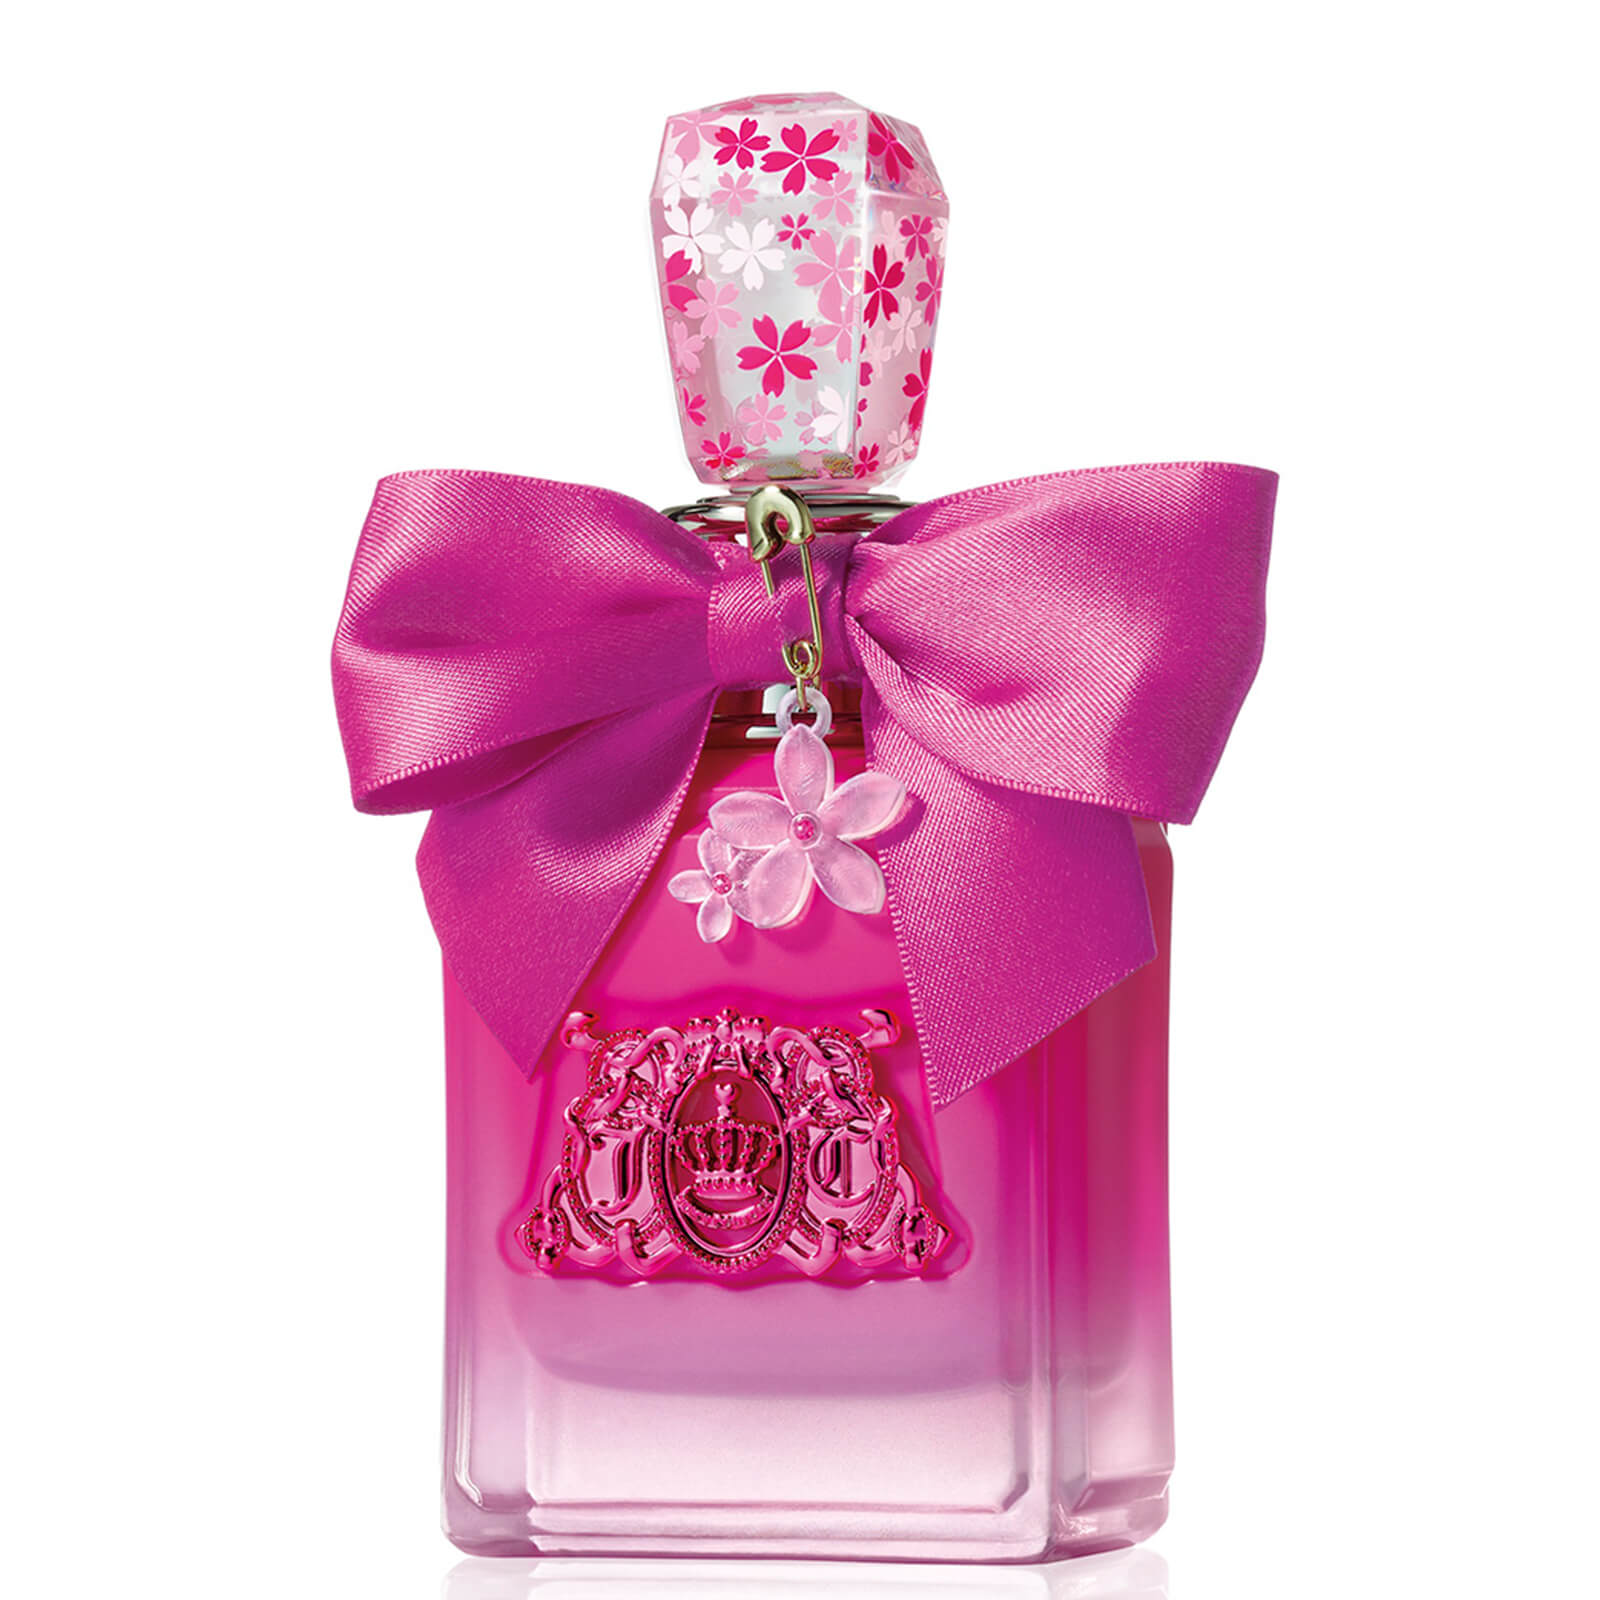 Juicy Couture Viva La Juicy Petals Please Eau de Parfum 100ml